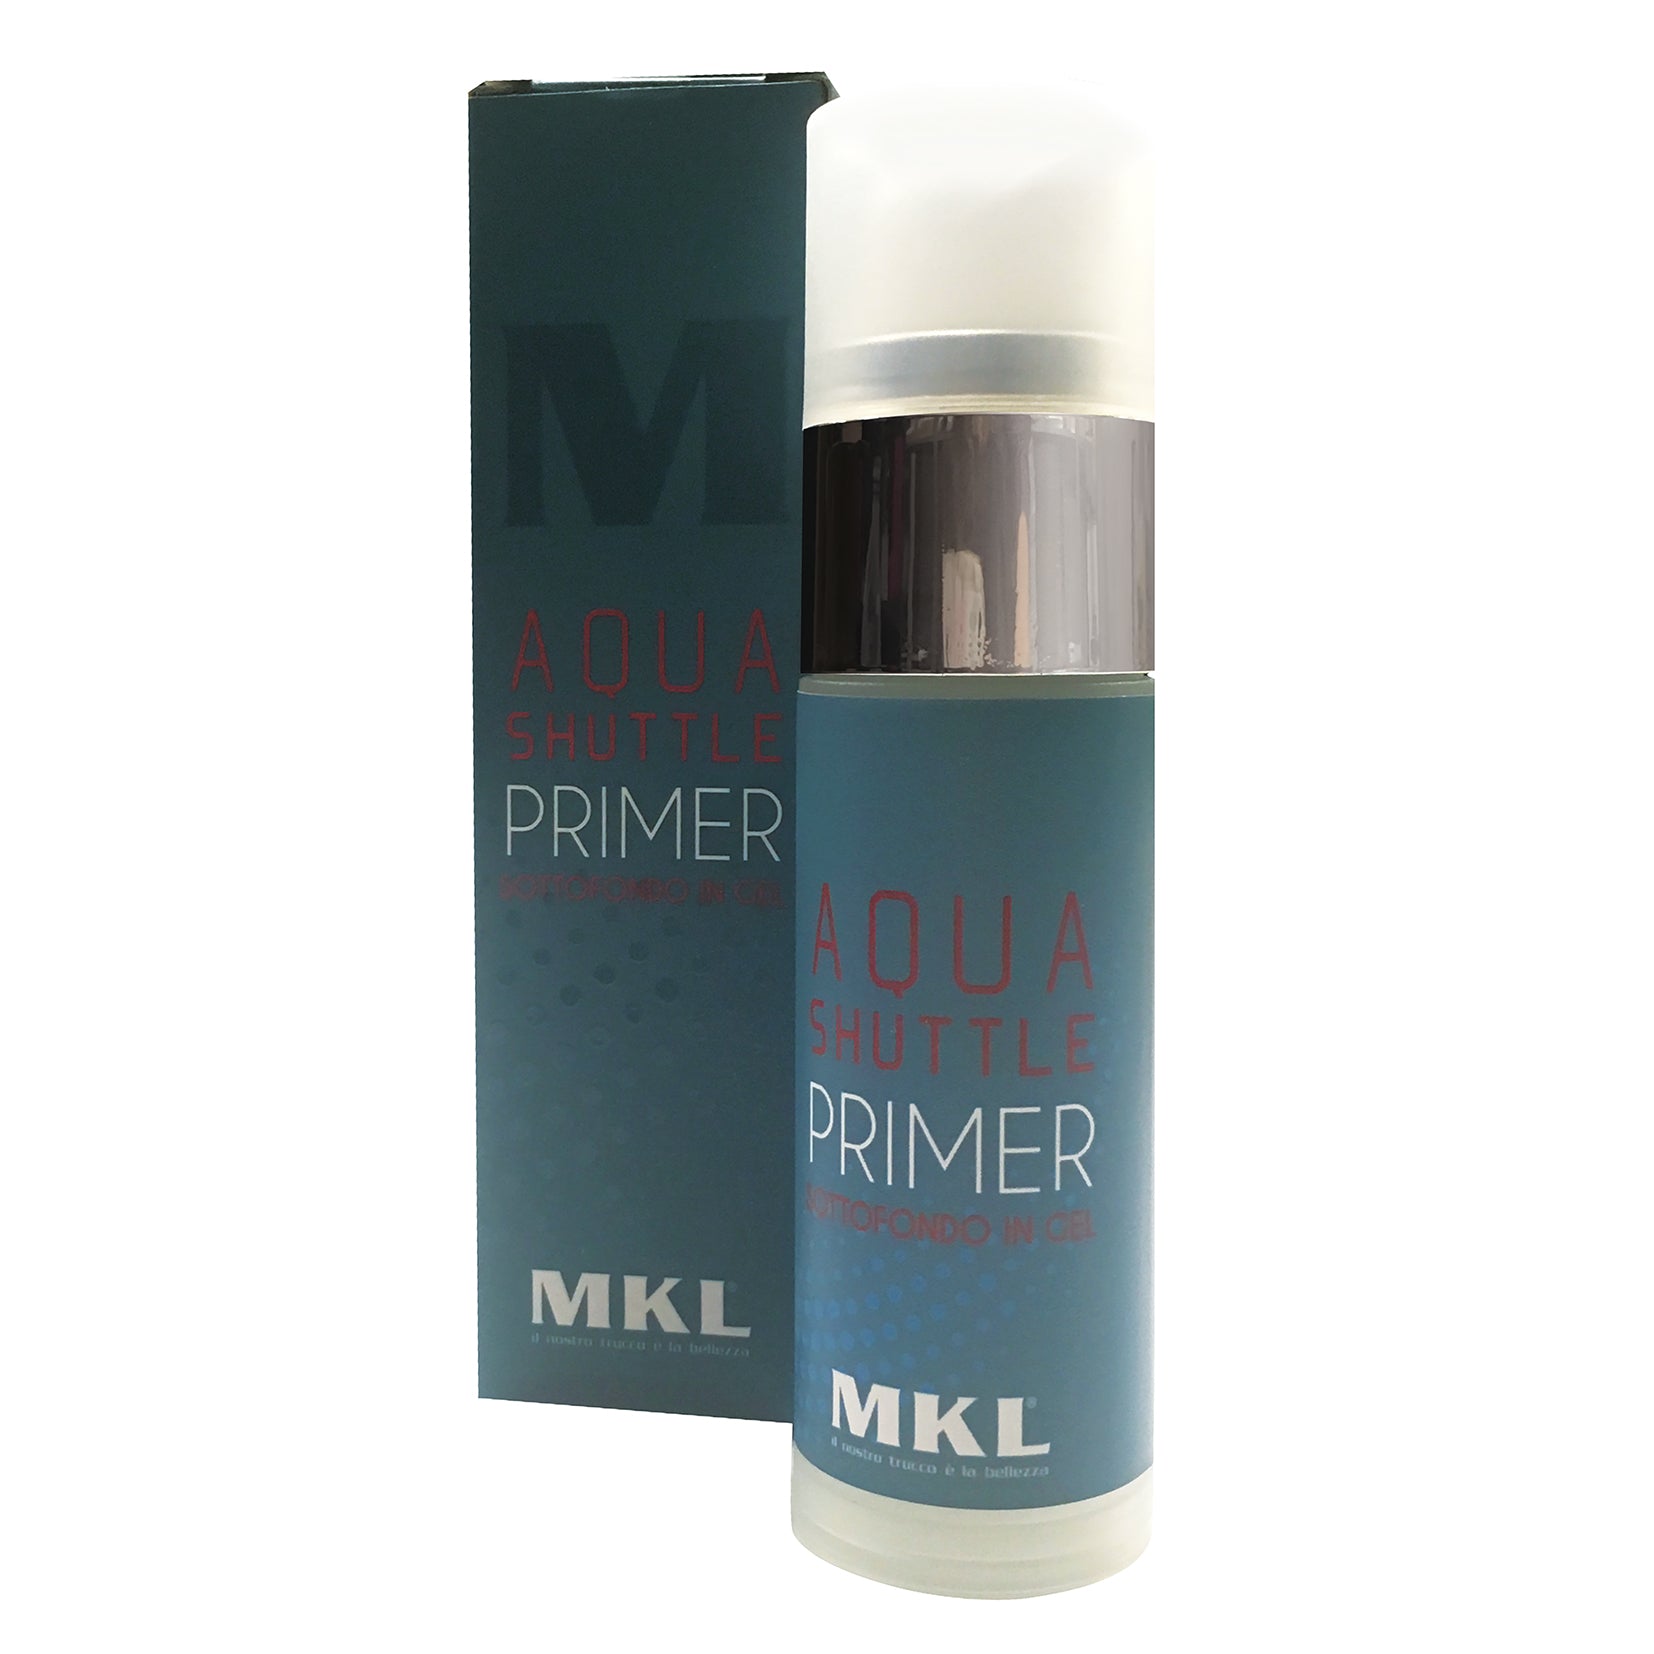 MKL Primer ottimale per il make- up, grazie alla combinazione molecolare "Aqua Shuttle" contenuta, dona un' idratazione profonda senza appesantire la pelle